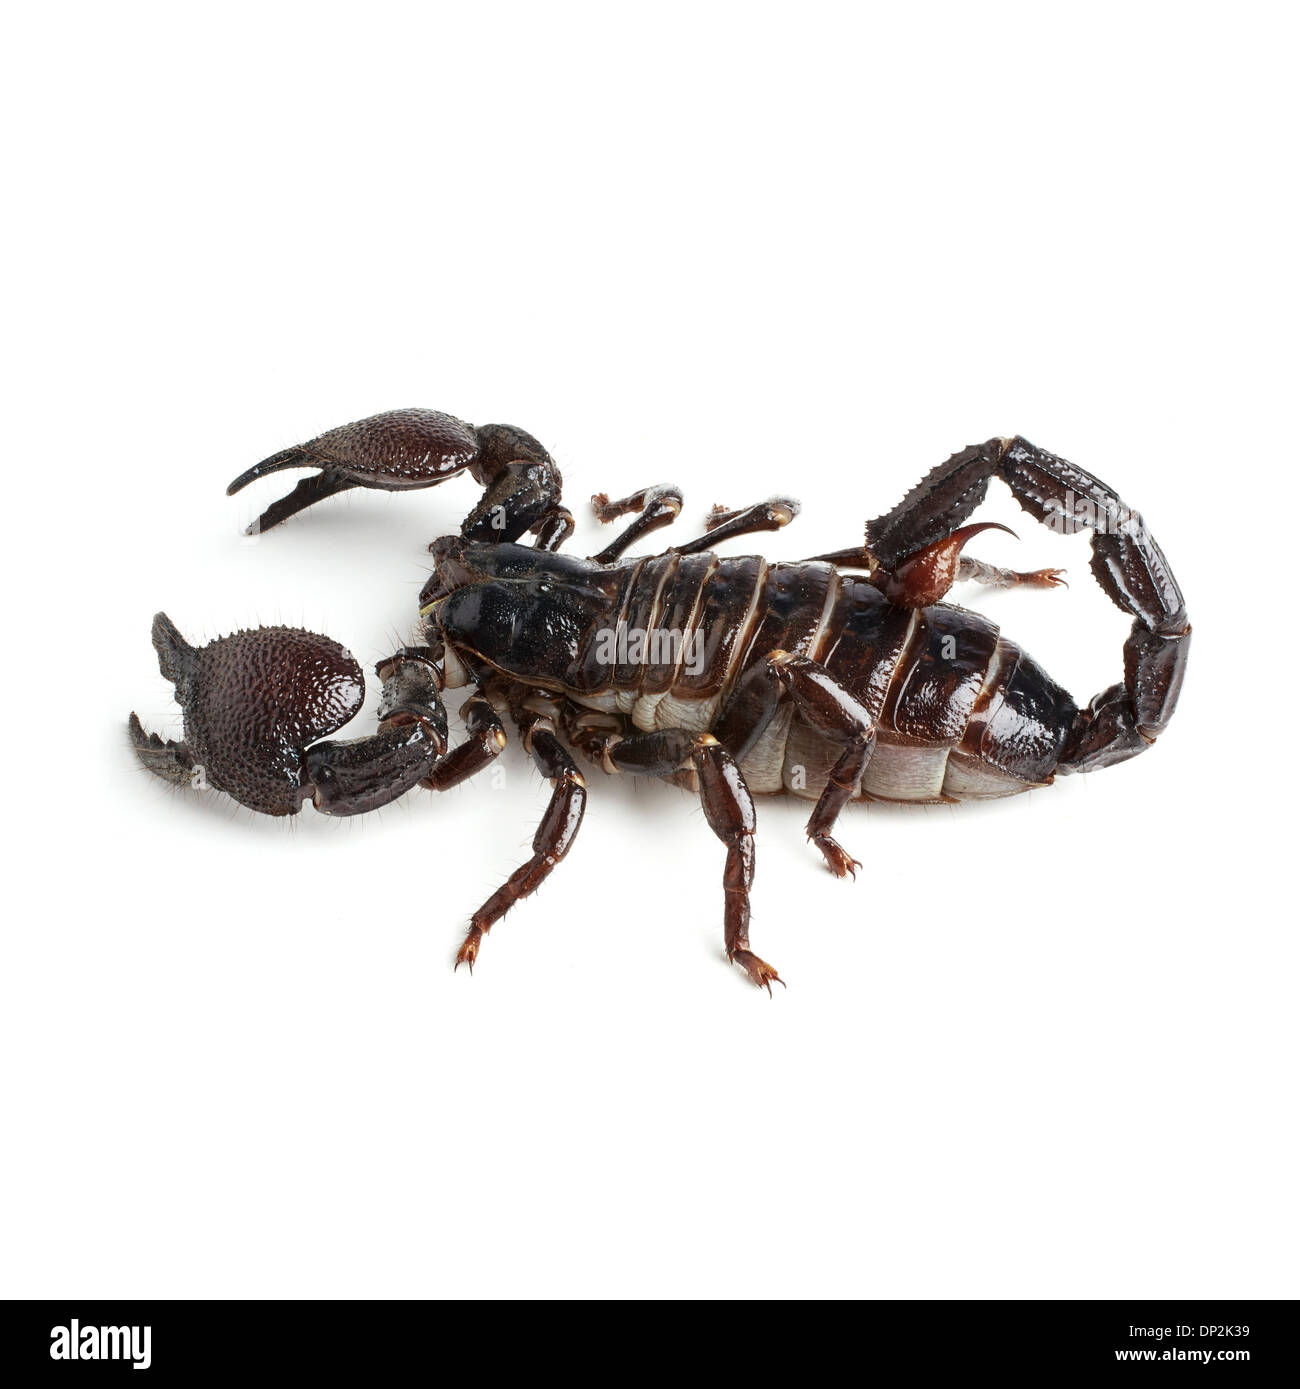 Emperor scorpion Stock Photo